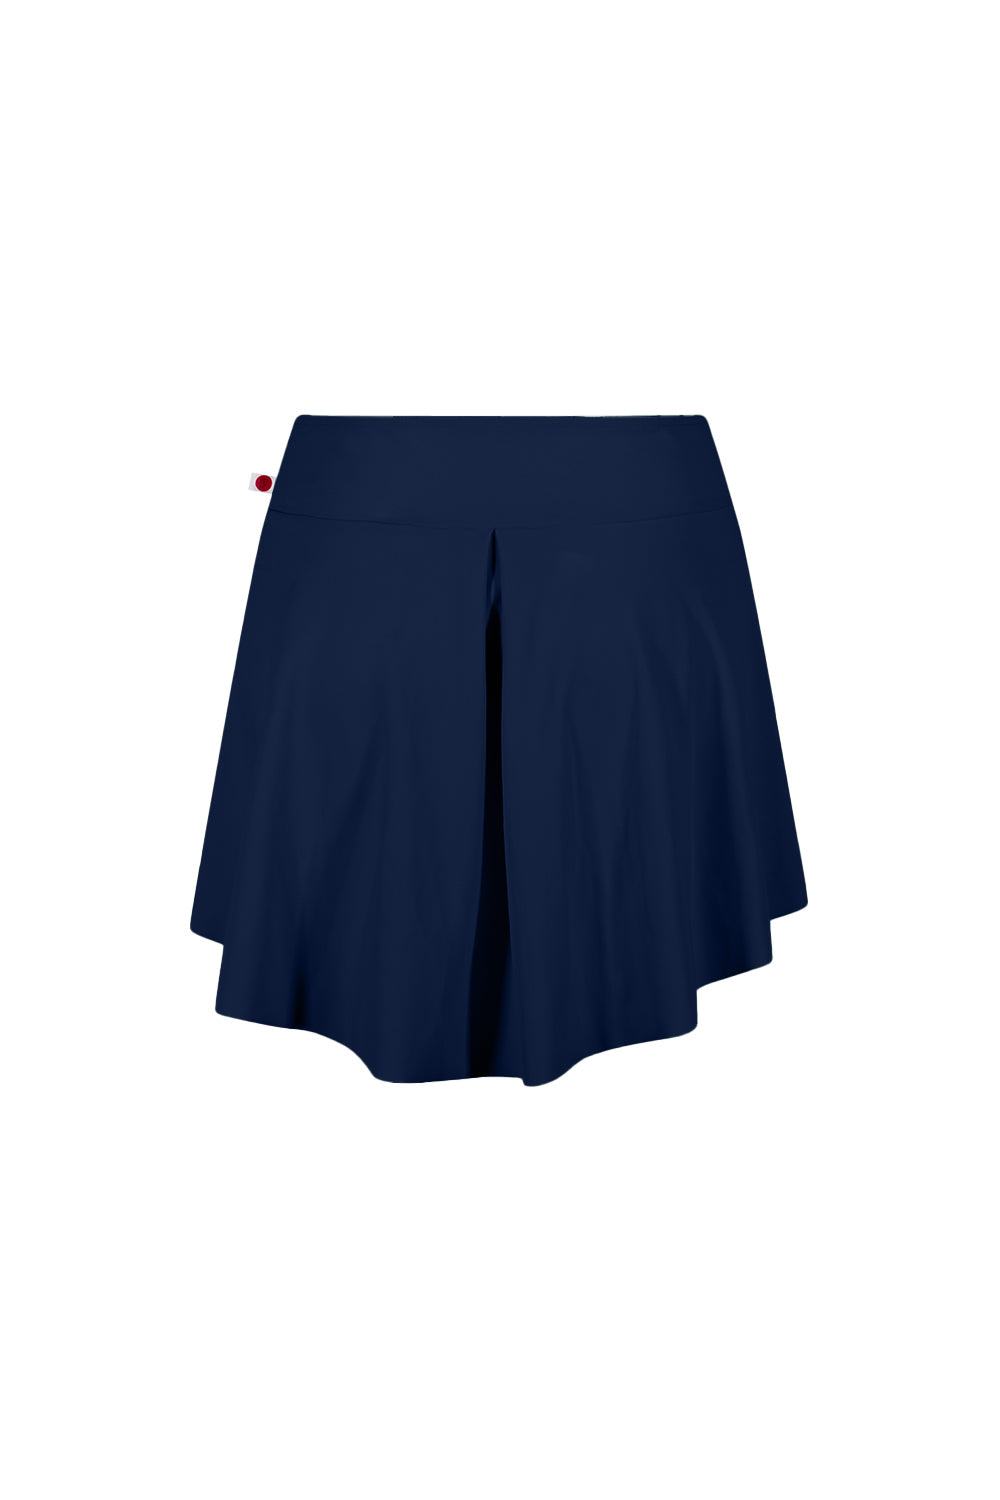 Isabelle Short Skirt - Dark Blue